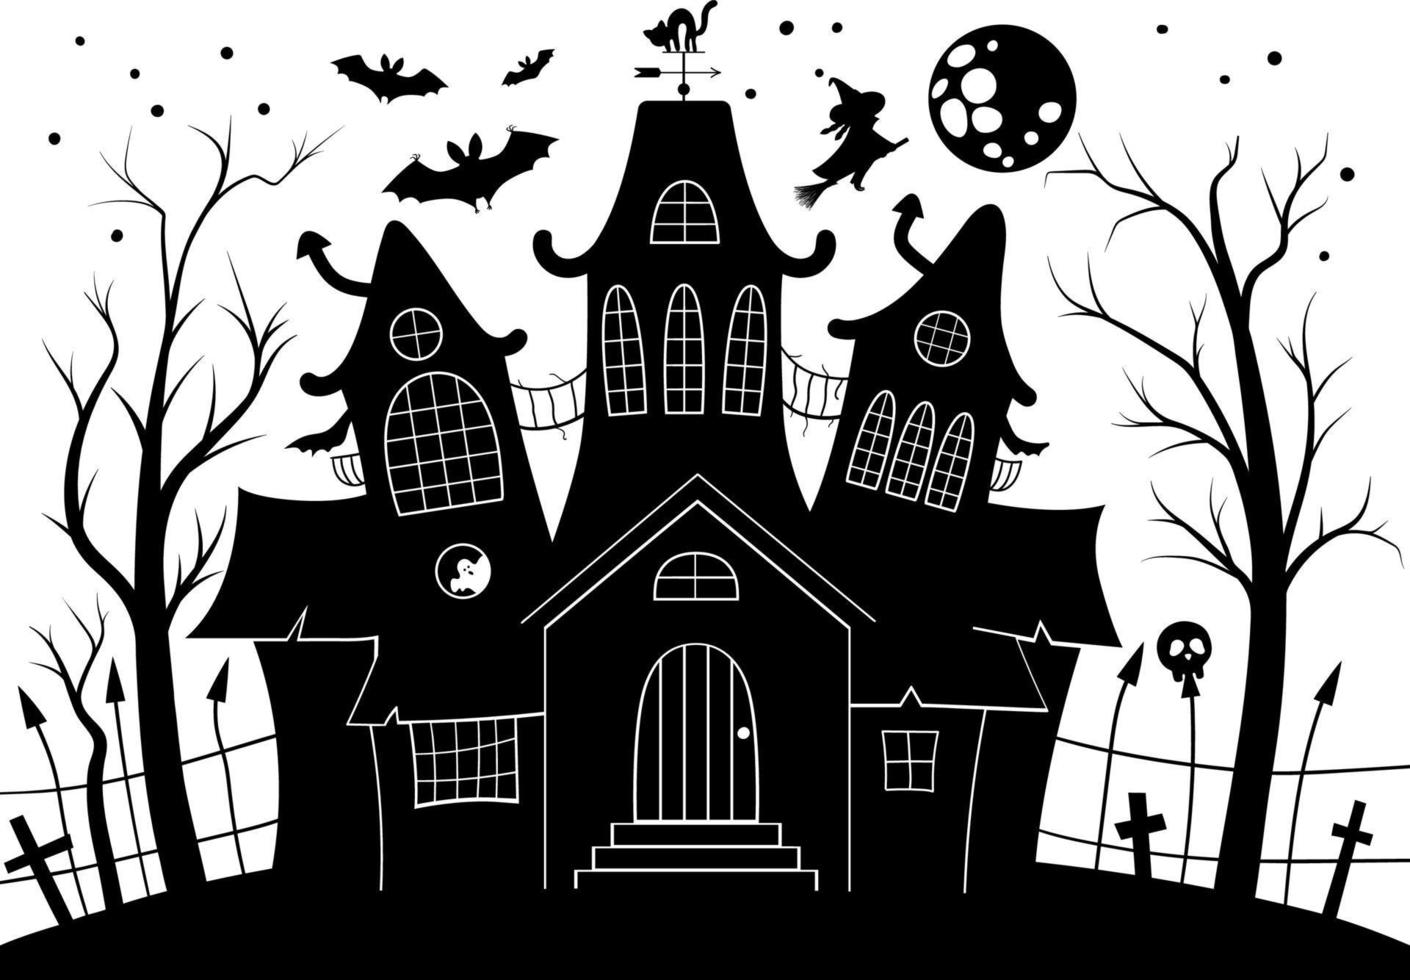 illustration vectorielle maison hantée en noir et blanc. fond d'halloween avec silhouette de cottage effrayant avec grande lune, fantômes, chauves-souris, cimetière. effrayante invitation à la fête de samhain ou conception de cartes. vecteur